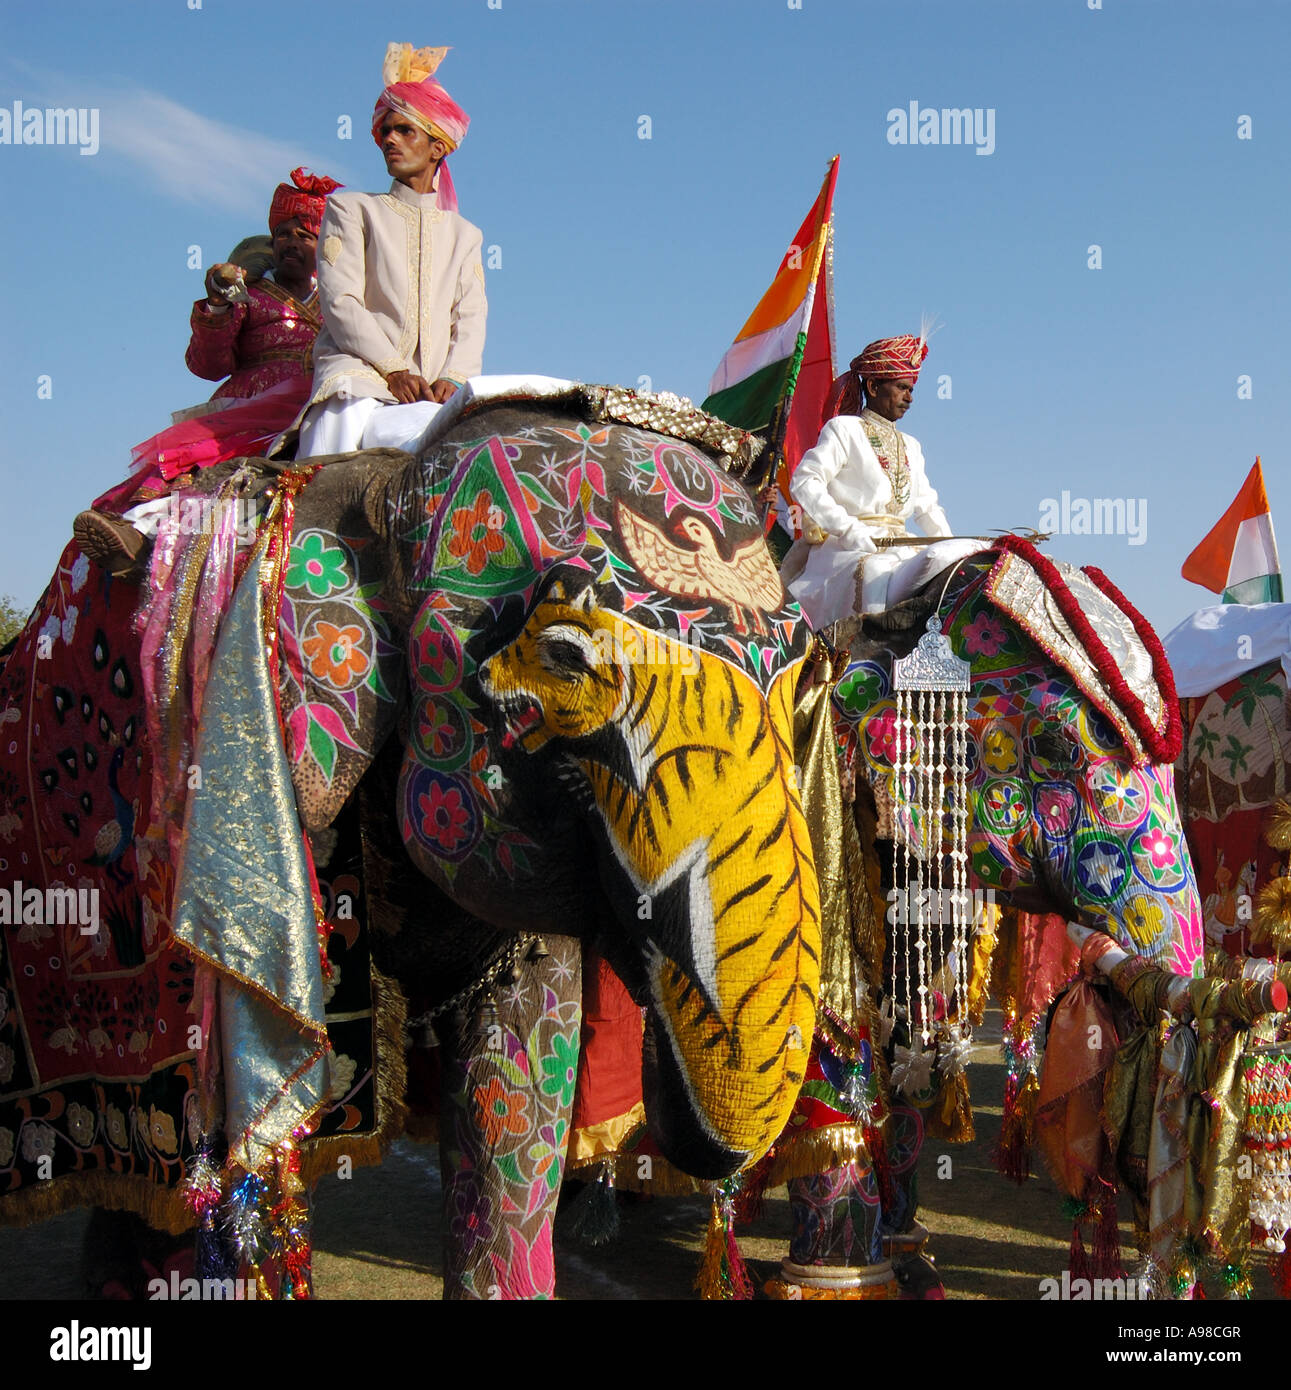 Elephants on parade, Jaipur Elephant Festival Stock Photo - Alamy